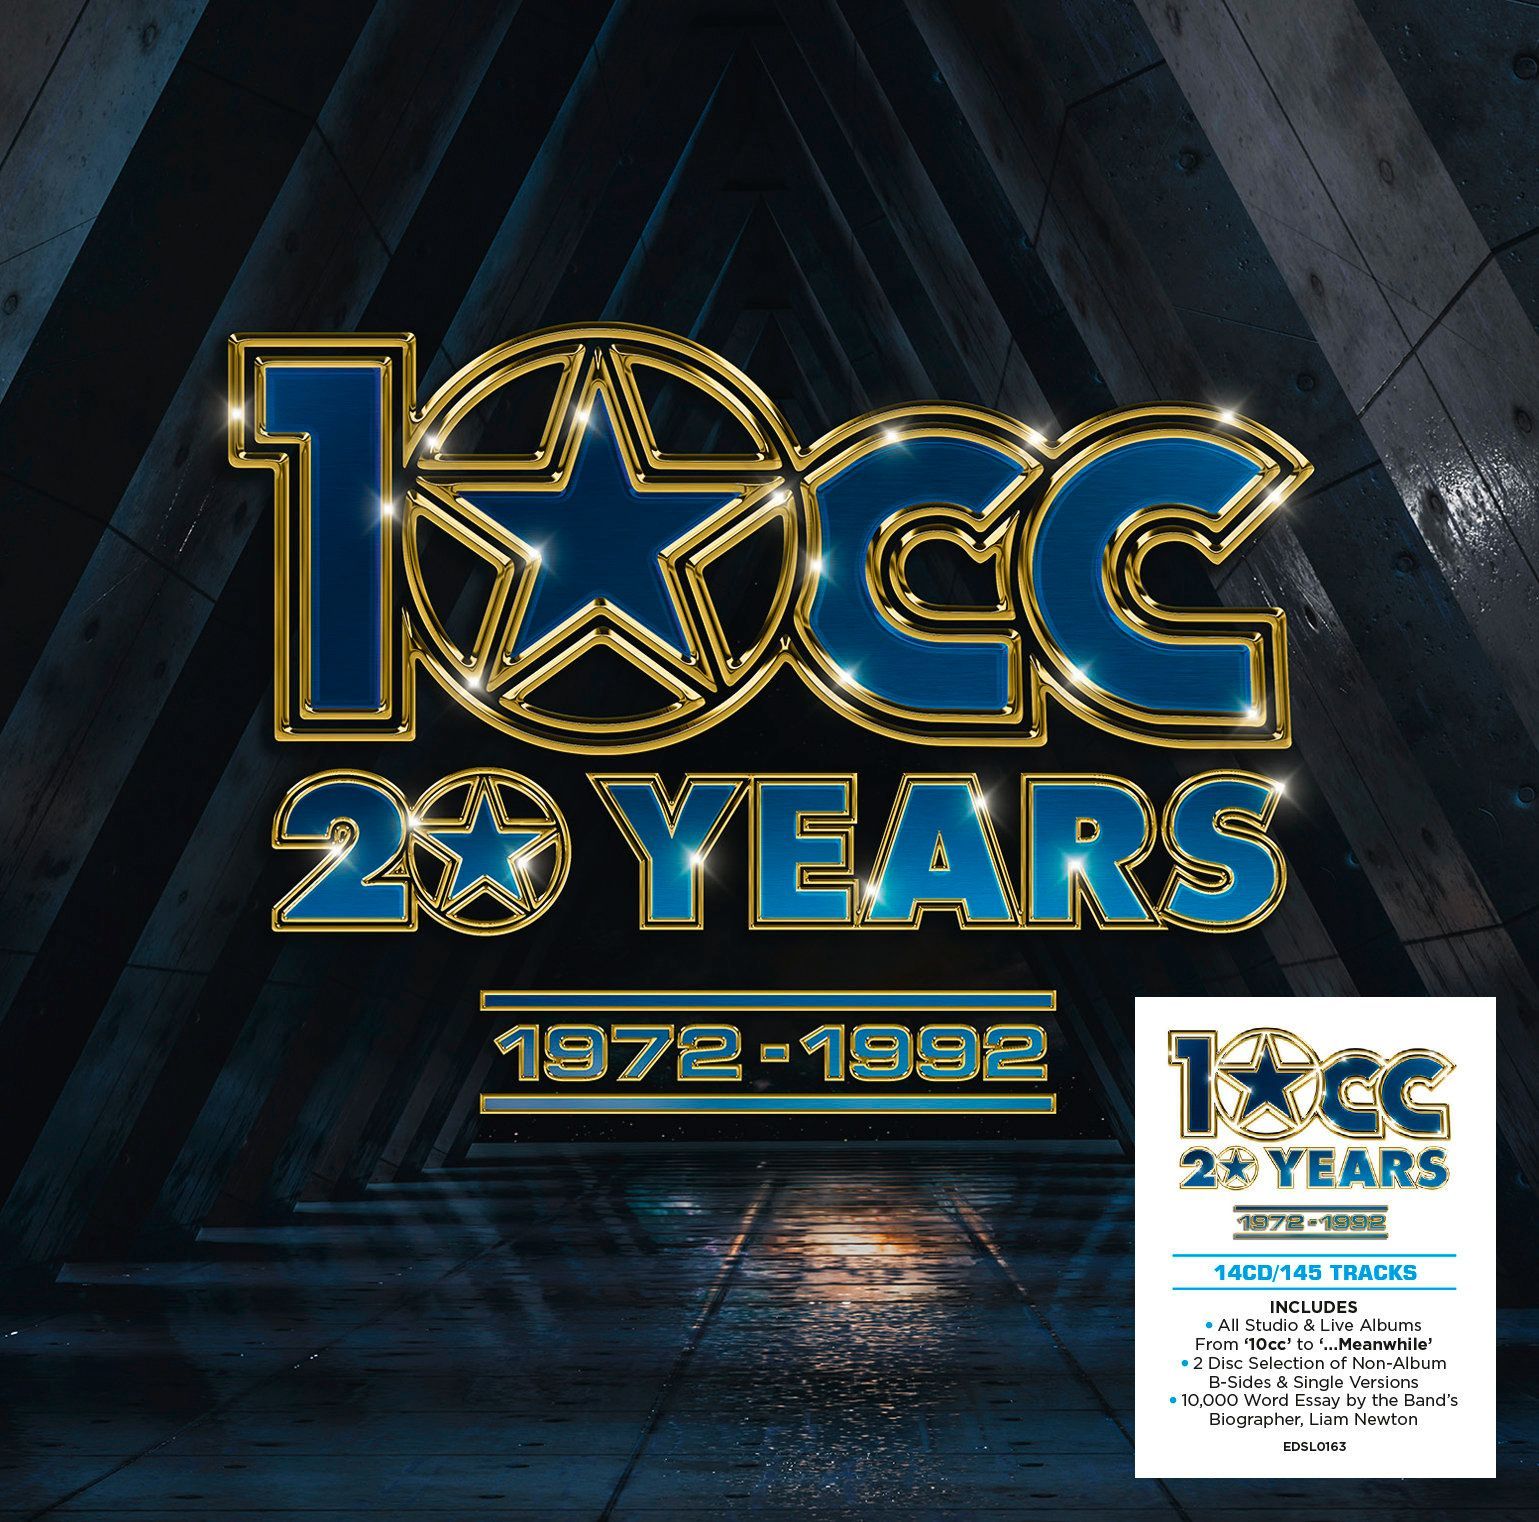 10cc ‘20 YEARS: 1972-1992’ CD Box